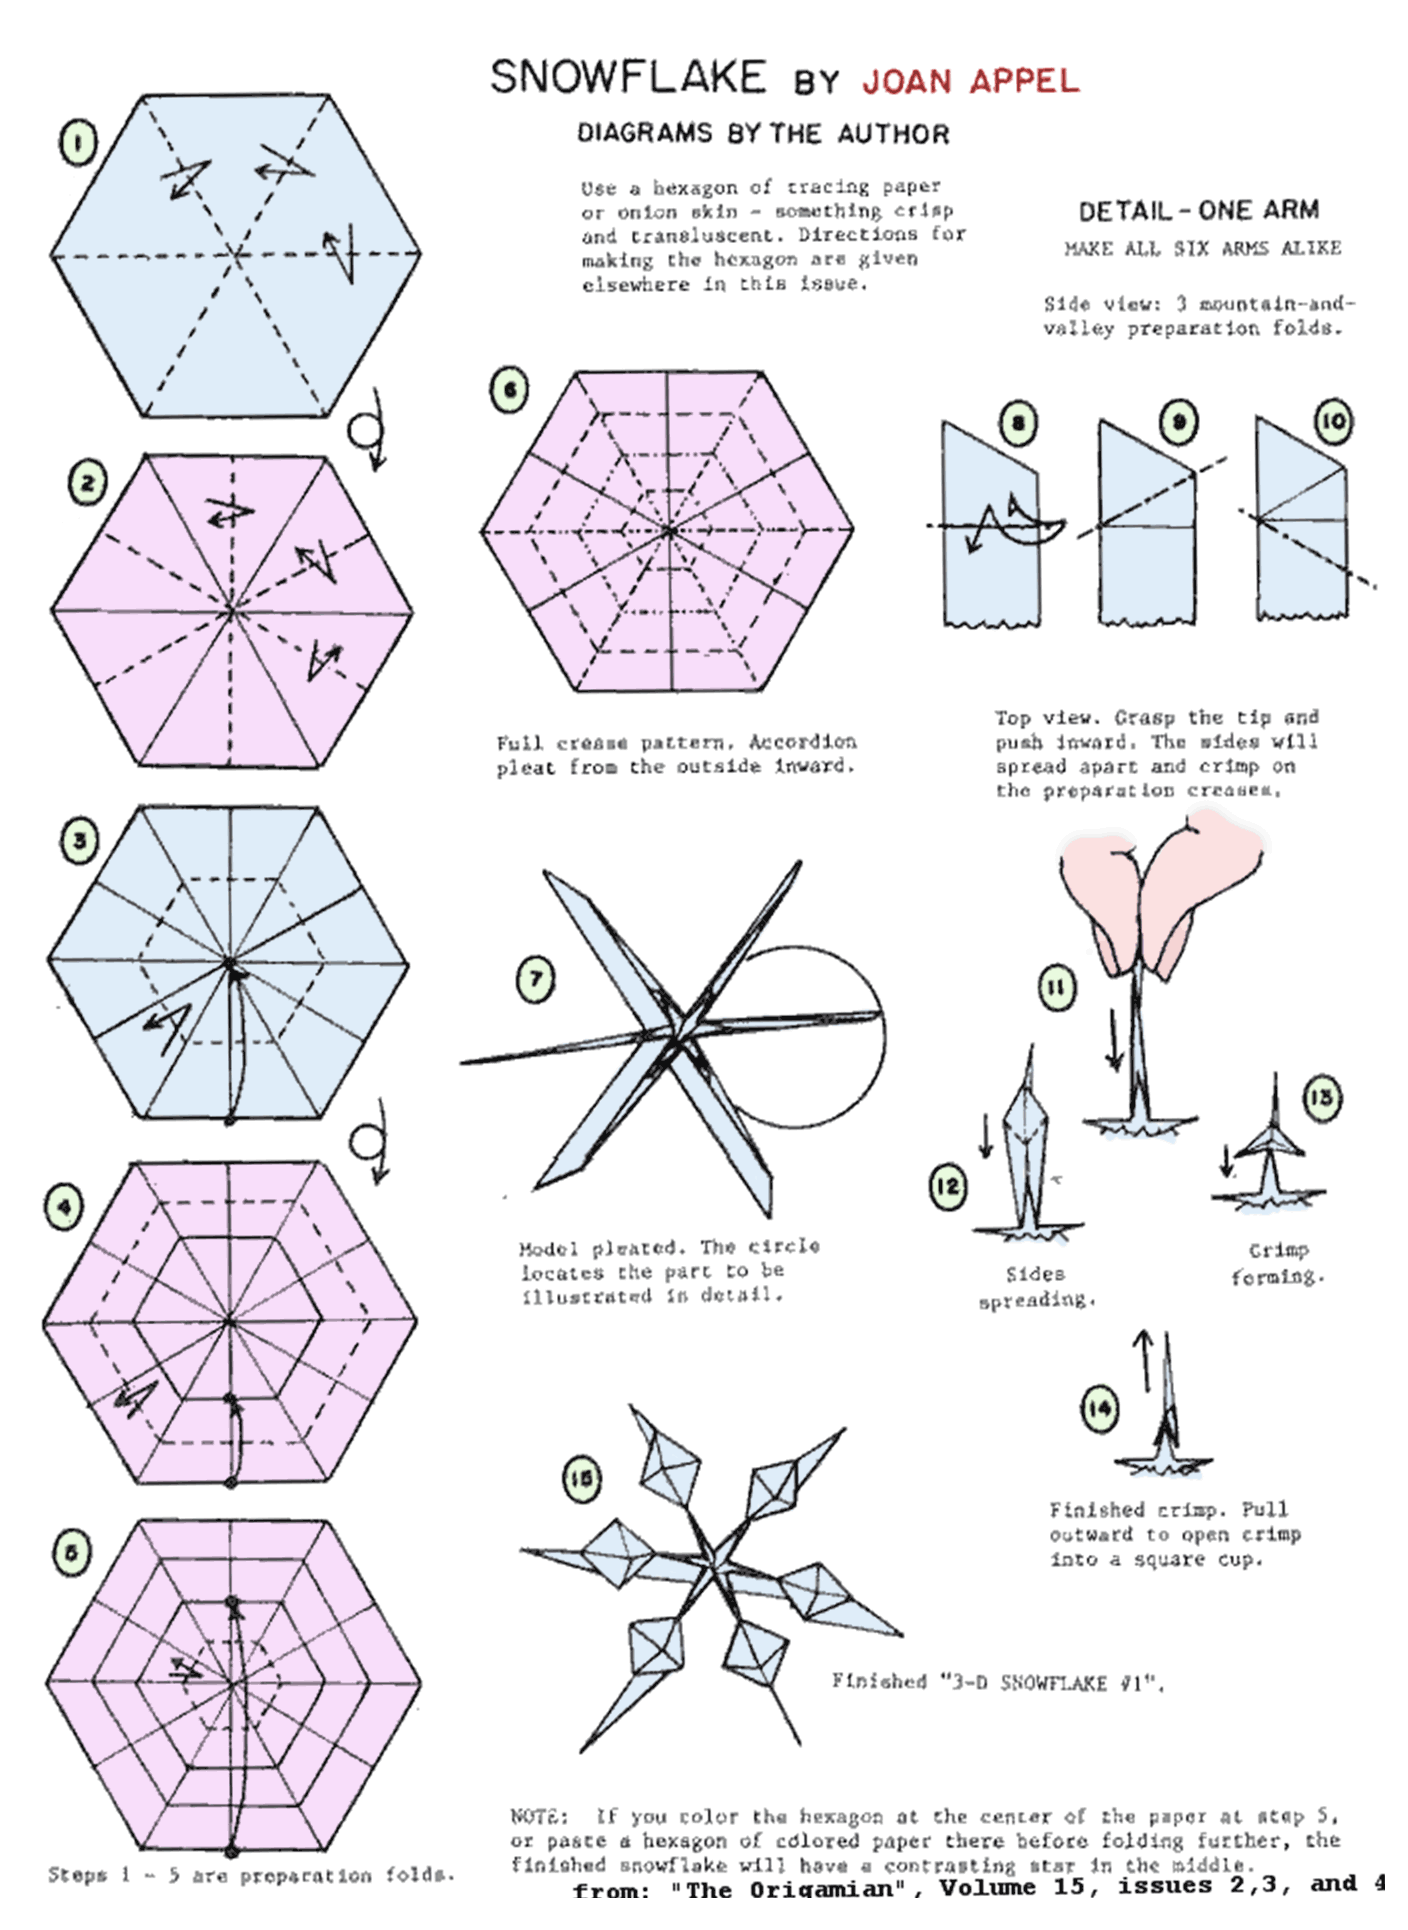 simple origami